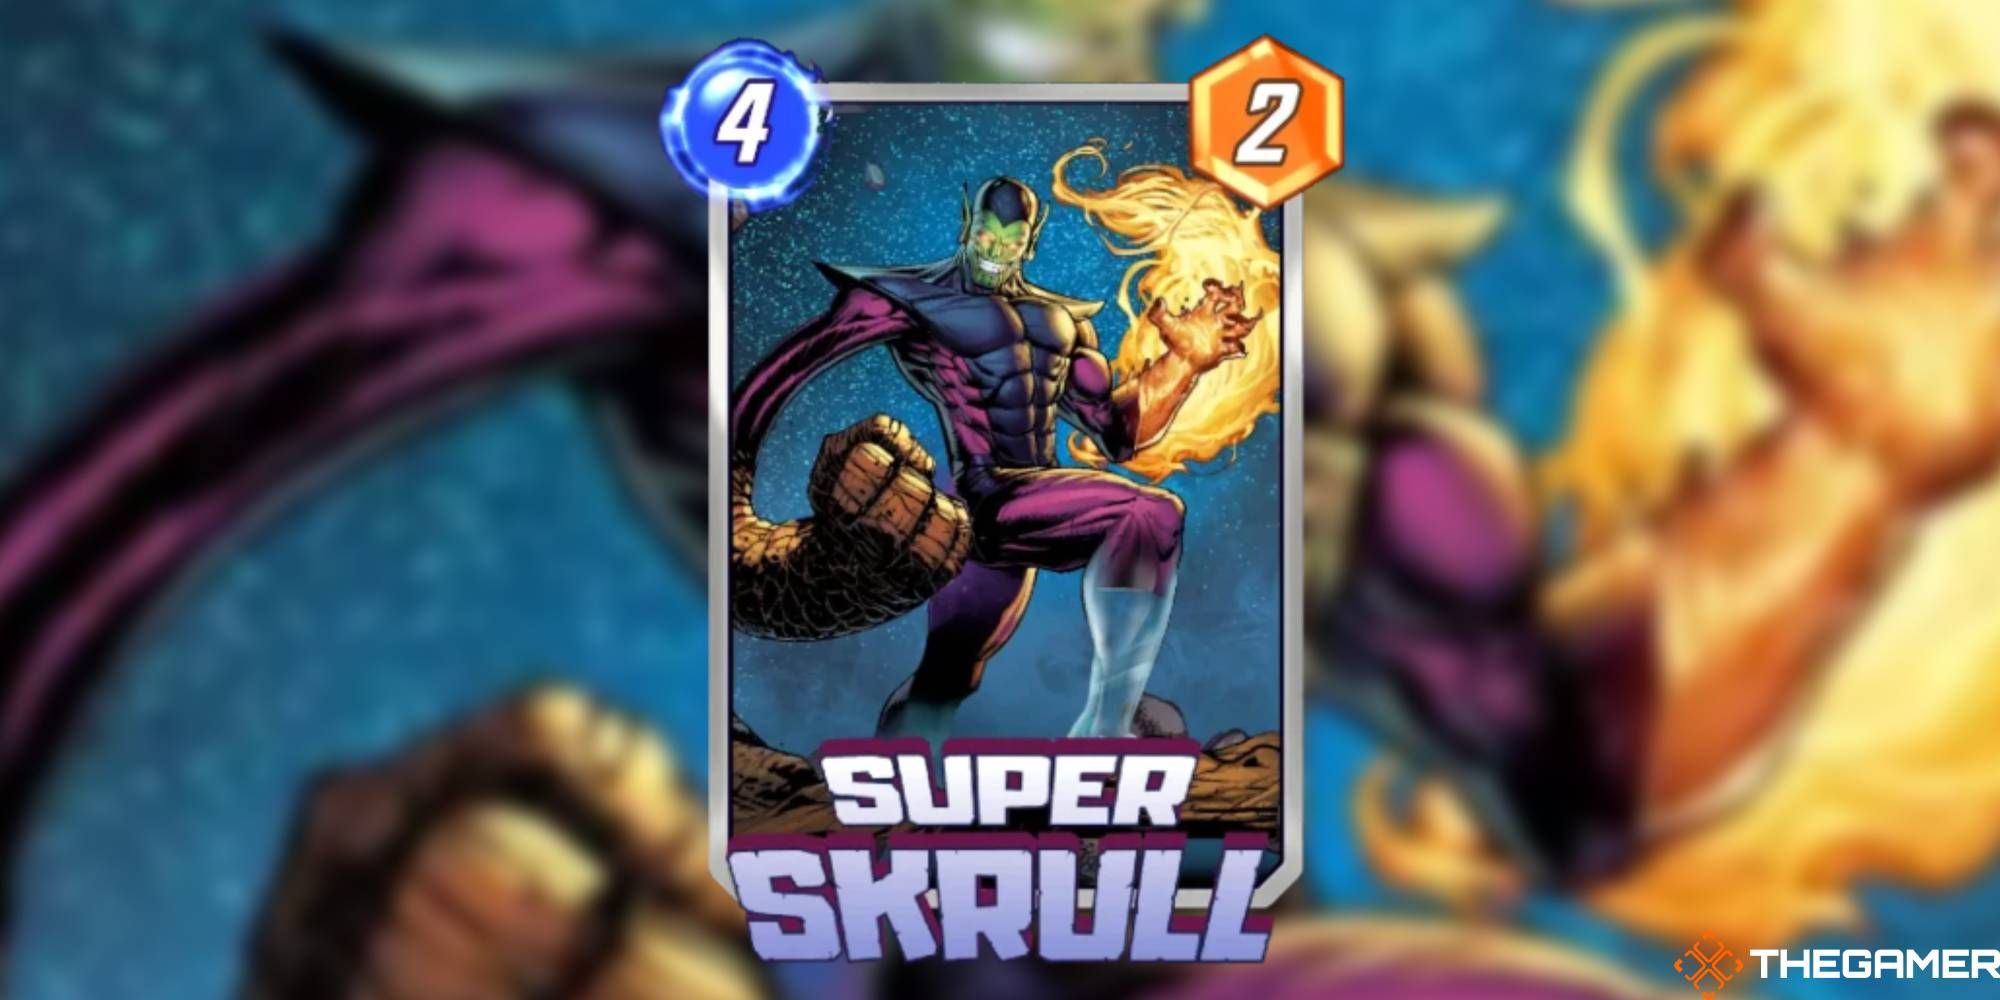 Marvel Snap - Super Skrull on a blurred background